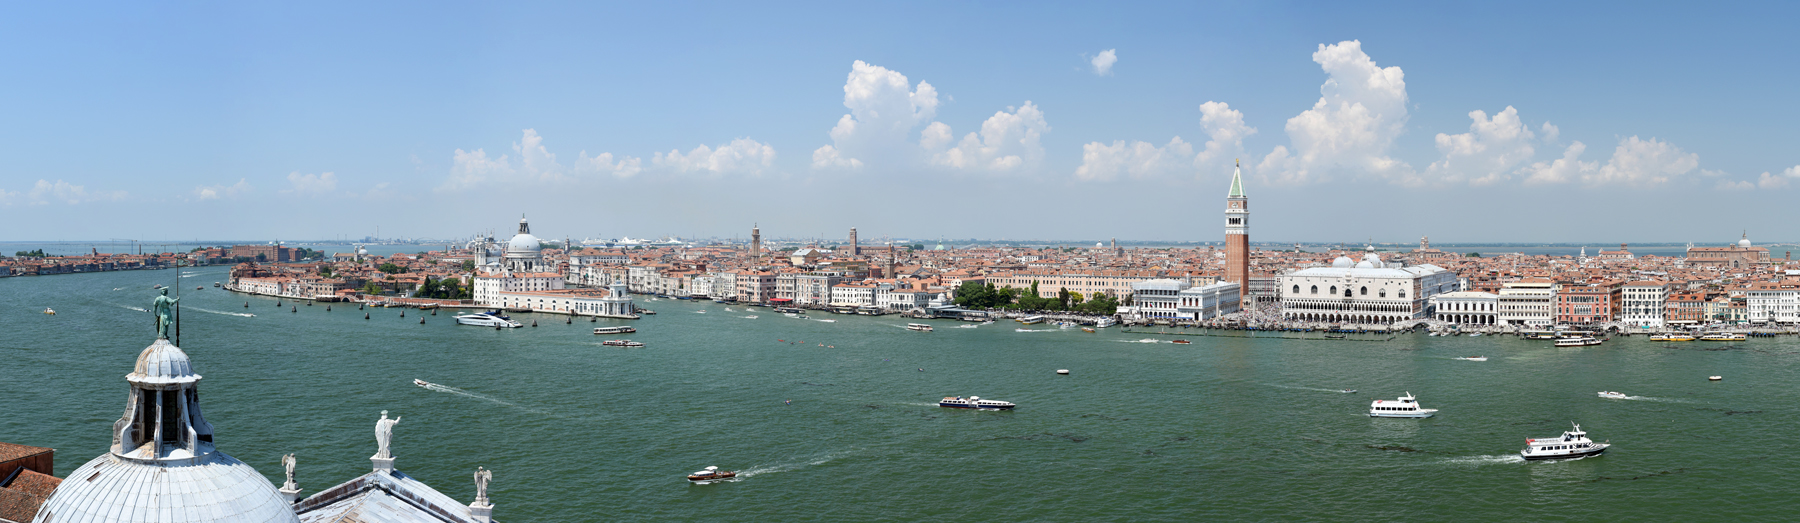 View  of Venezia from Campanile on San Giorgio Maggiore